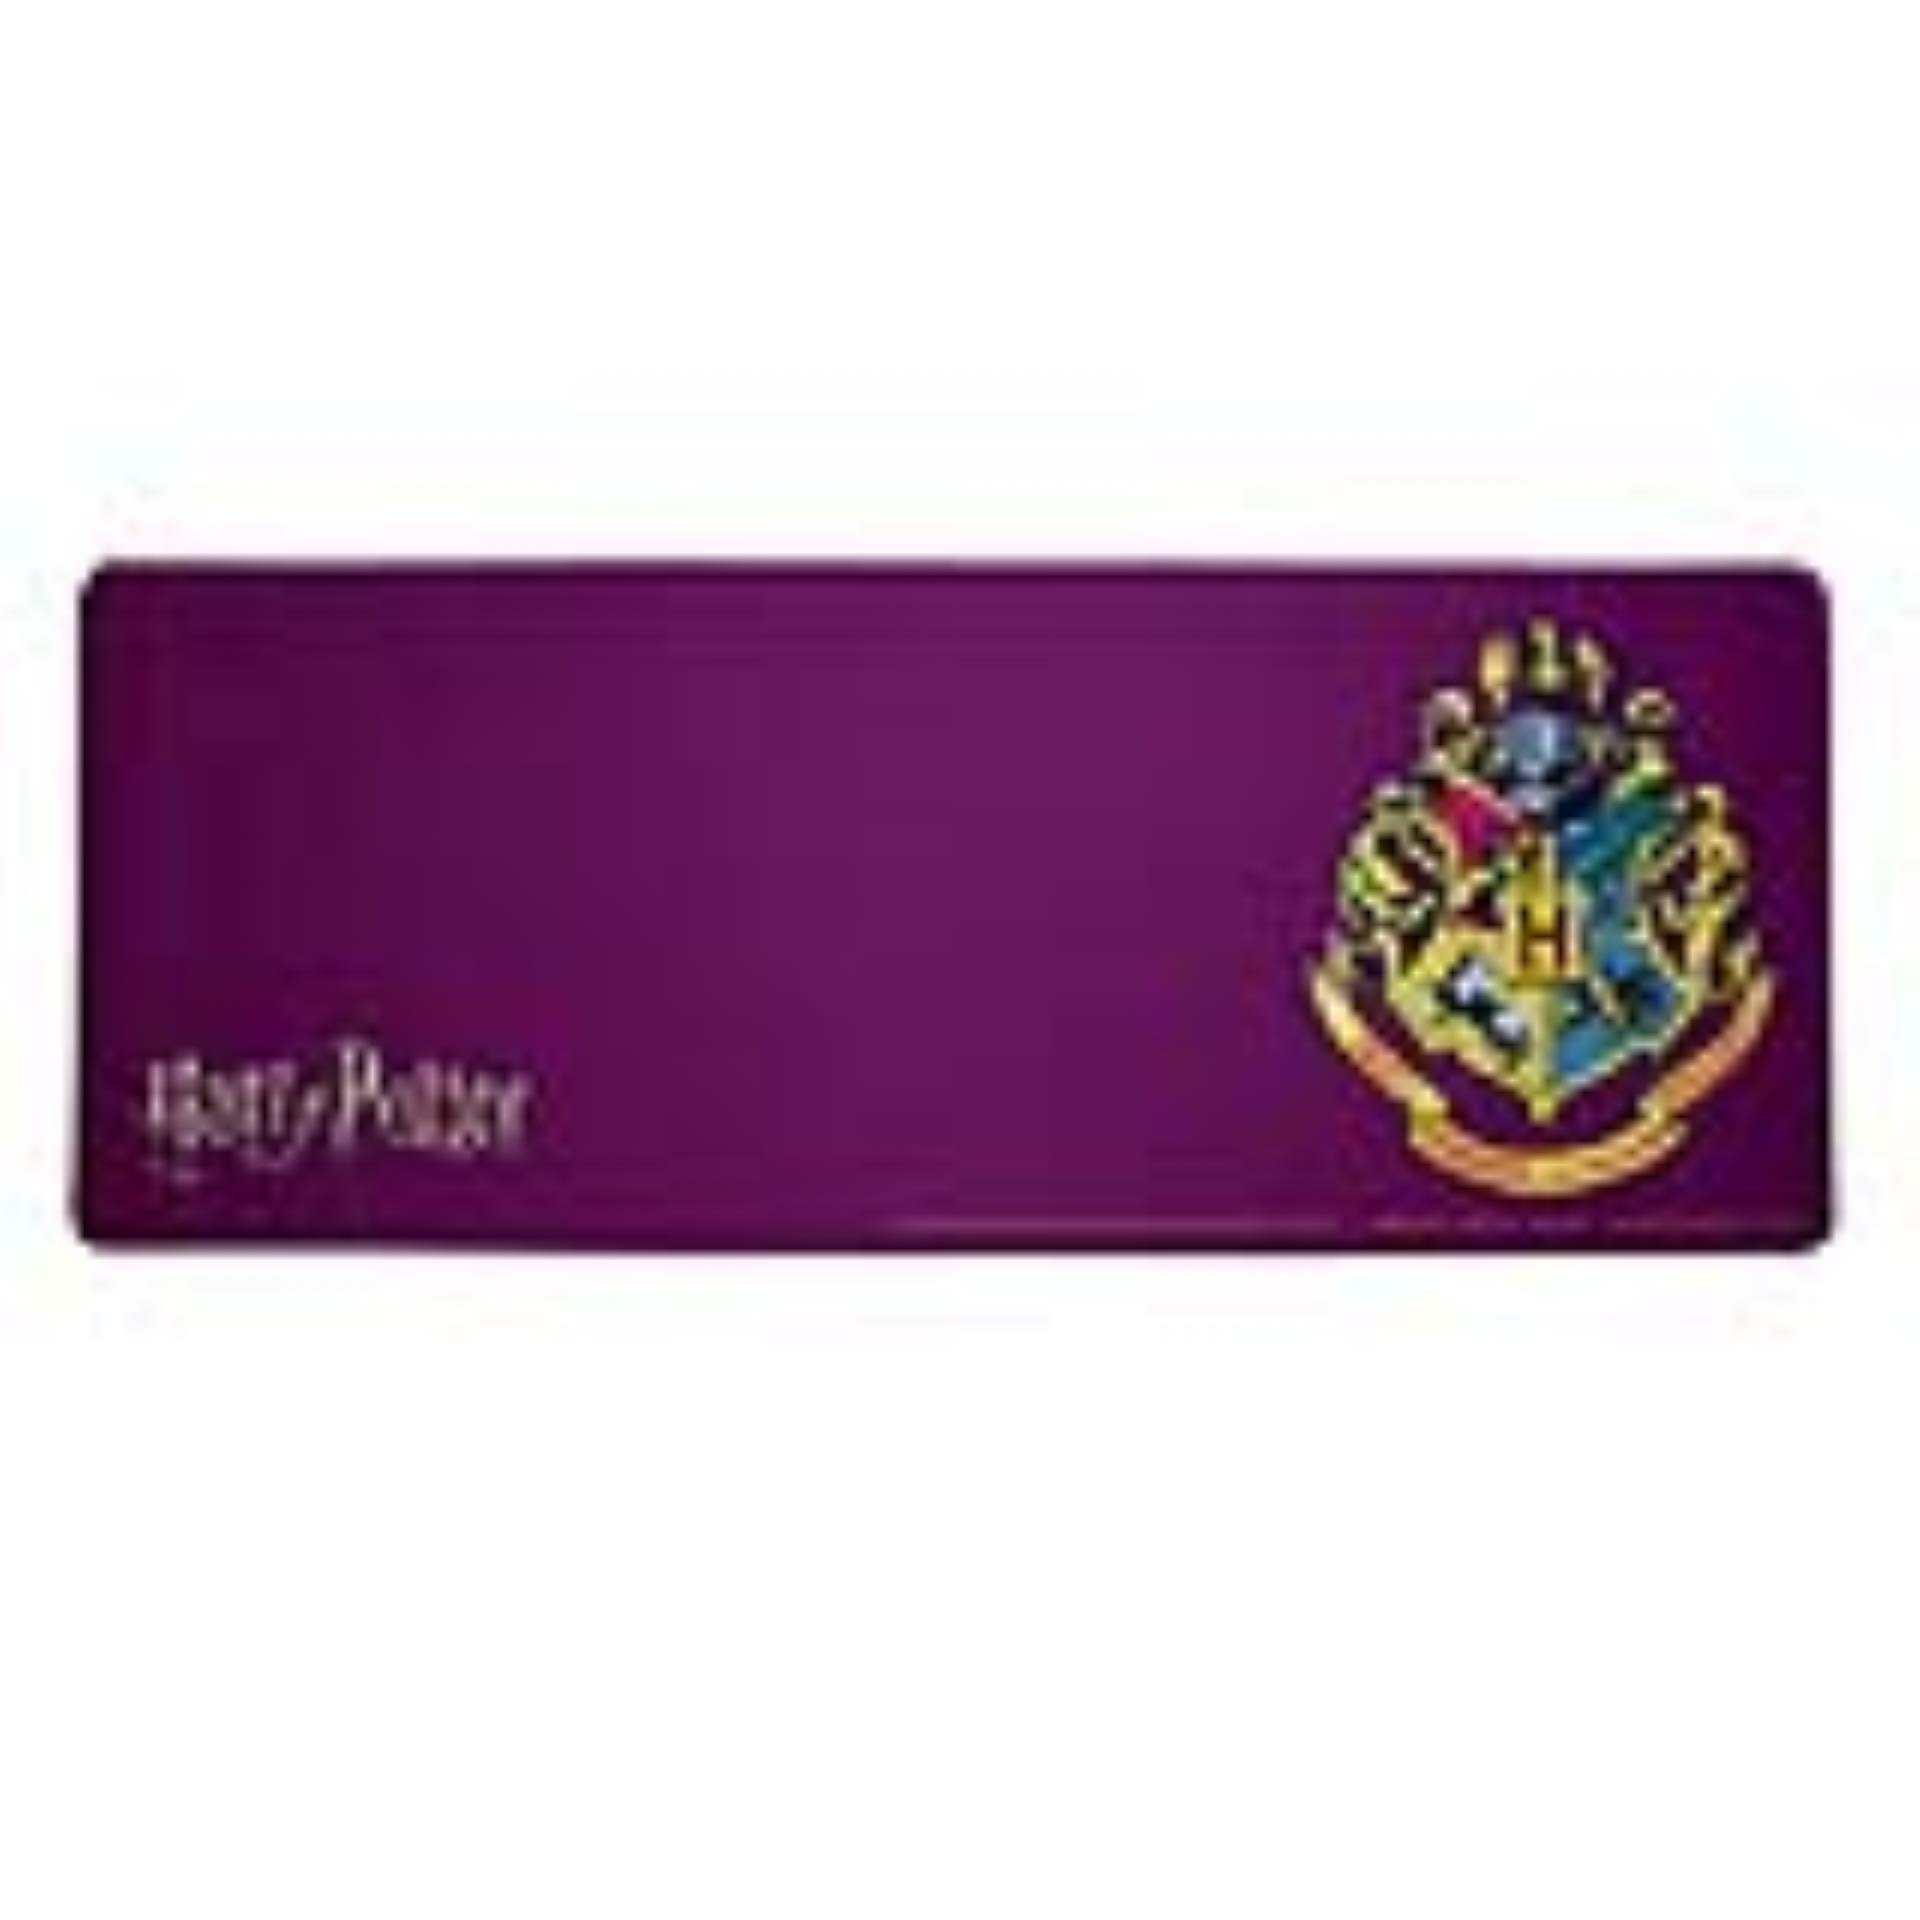 Acheter Harry Potter - Tapis de bureau sous-main Blason de Poudlard - Tapis  de Souris prix promo neuf et occasion pas cher